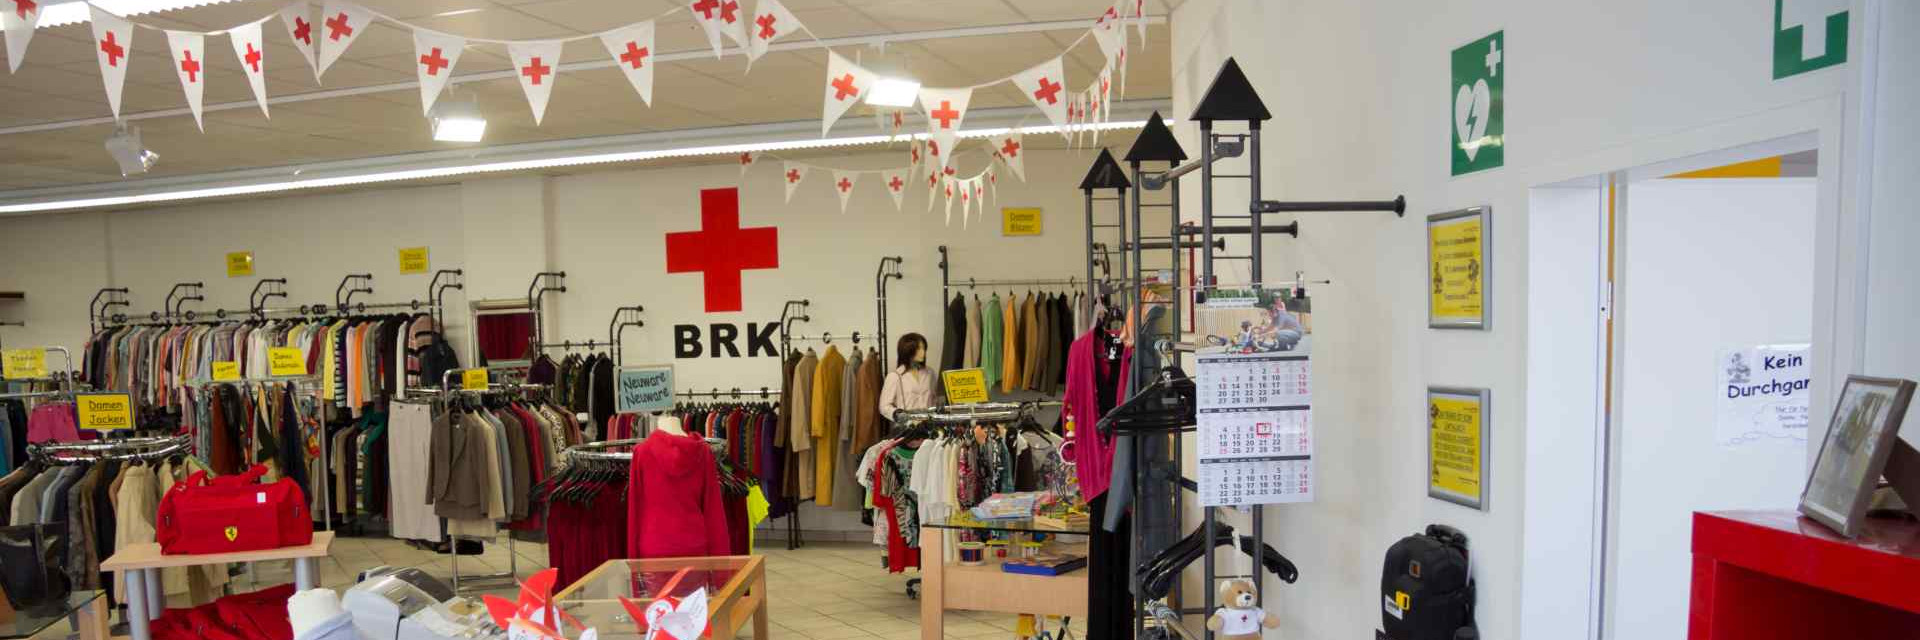 Das Bild zeigt die Ladeneinrichtung des Kleiderladen Wasserburg mit Dekoration des BRK.